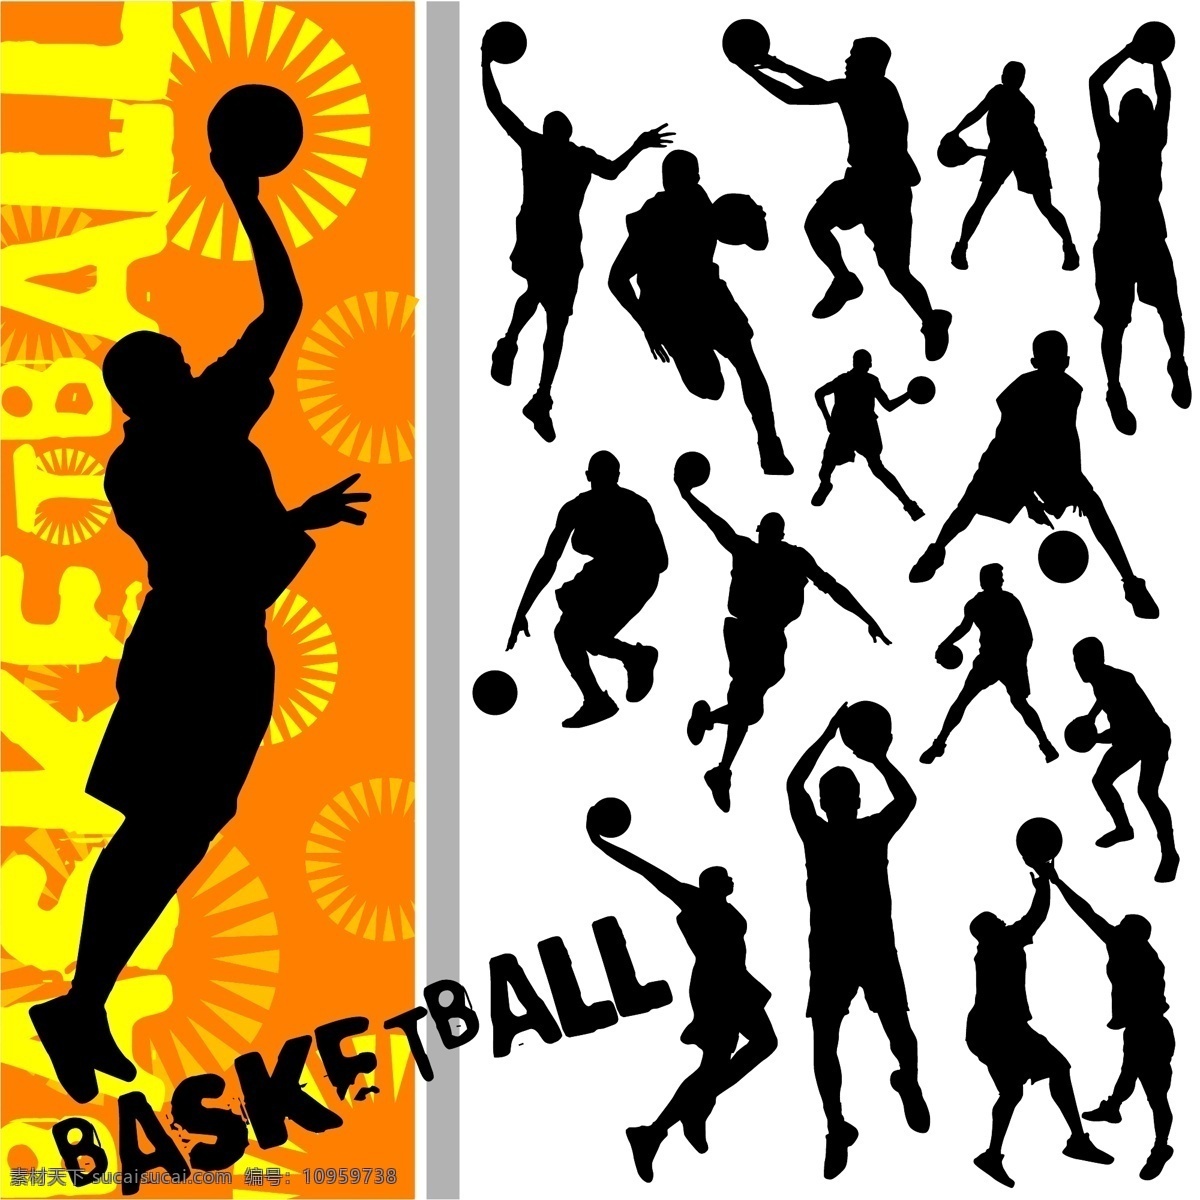 篮球矢量 篮球 体育 剪影 人物 运动 矢量 底纹边框 其他素材